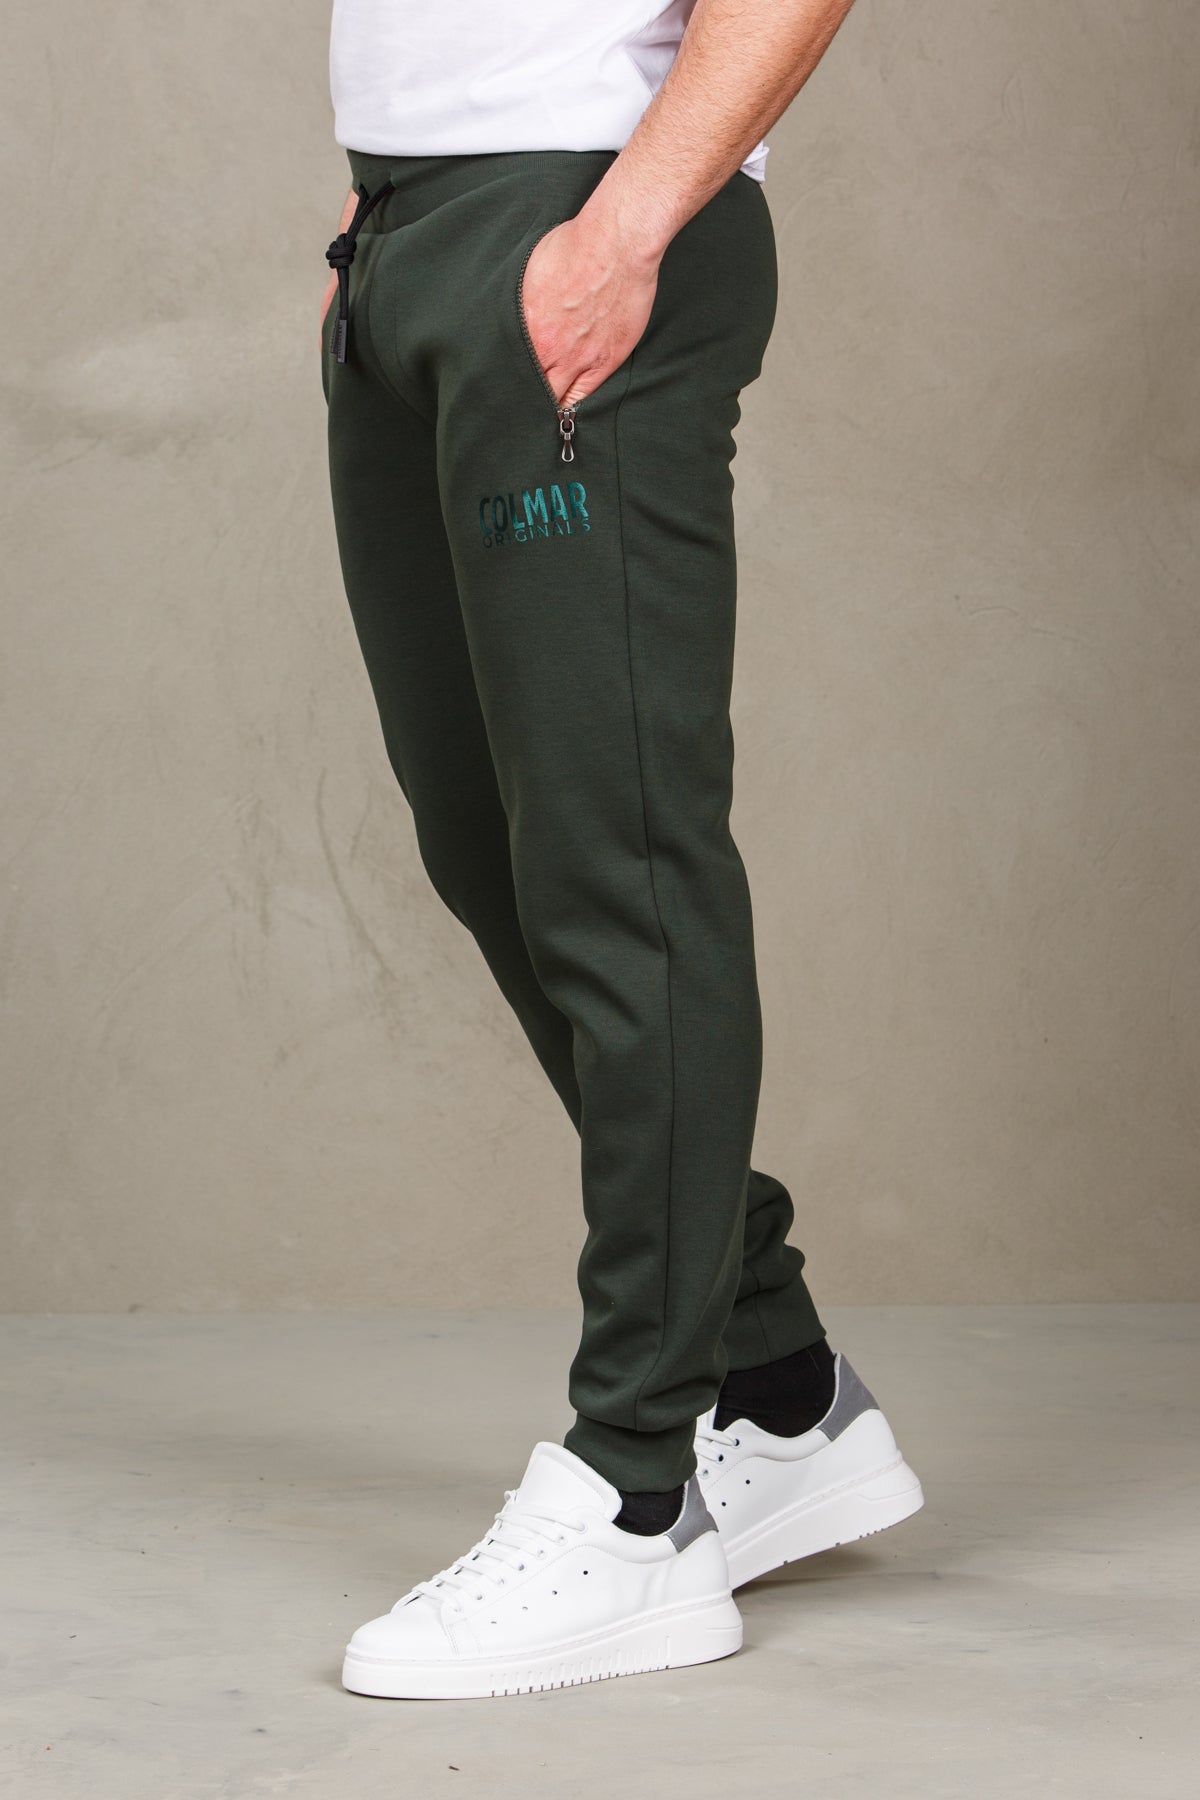 Pantaloni felpa uomo con logo colmar 82666382-military verde man  - 2